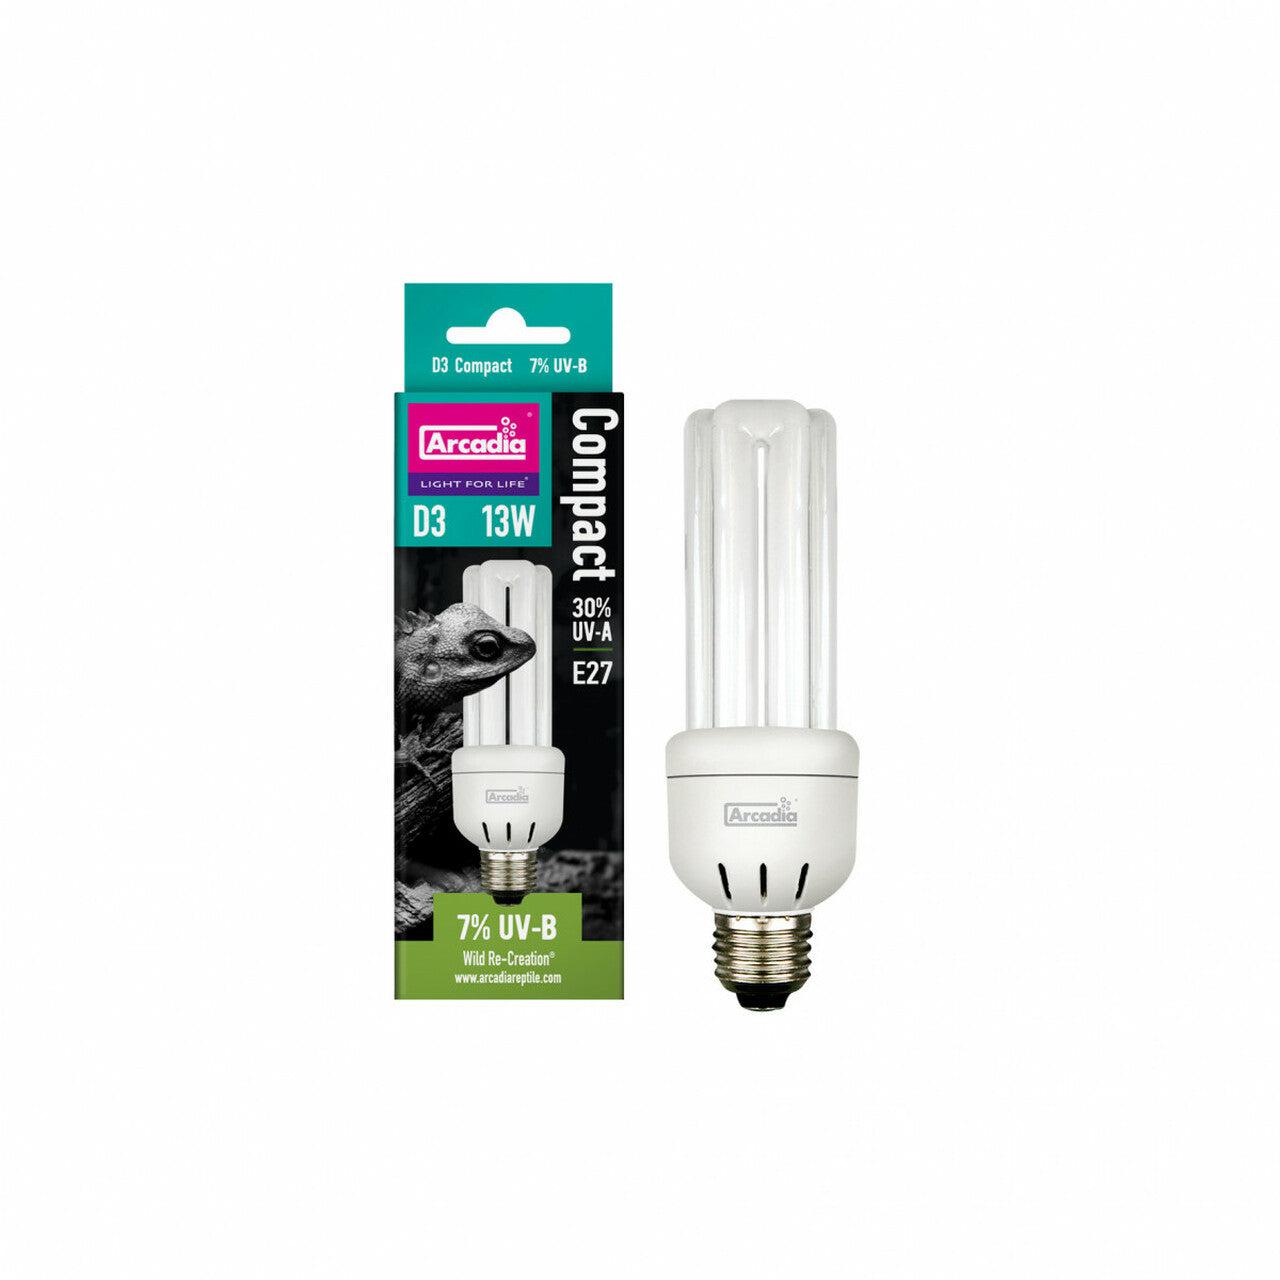 Arcadia D3 7% UVB Compact Bulb